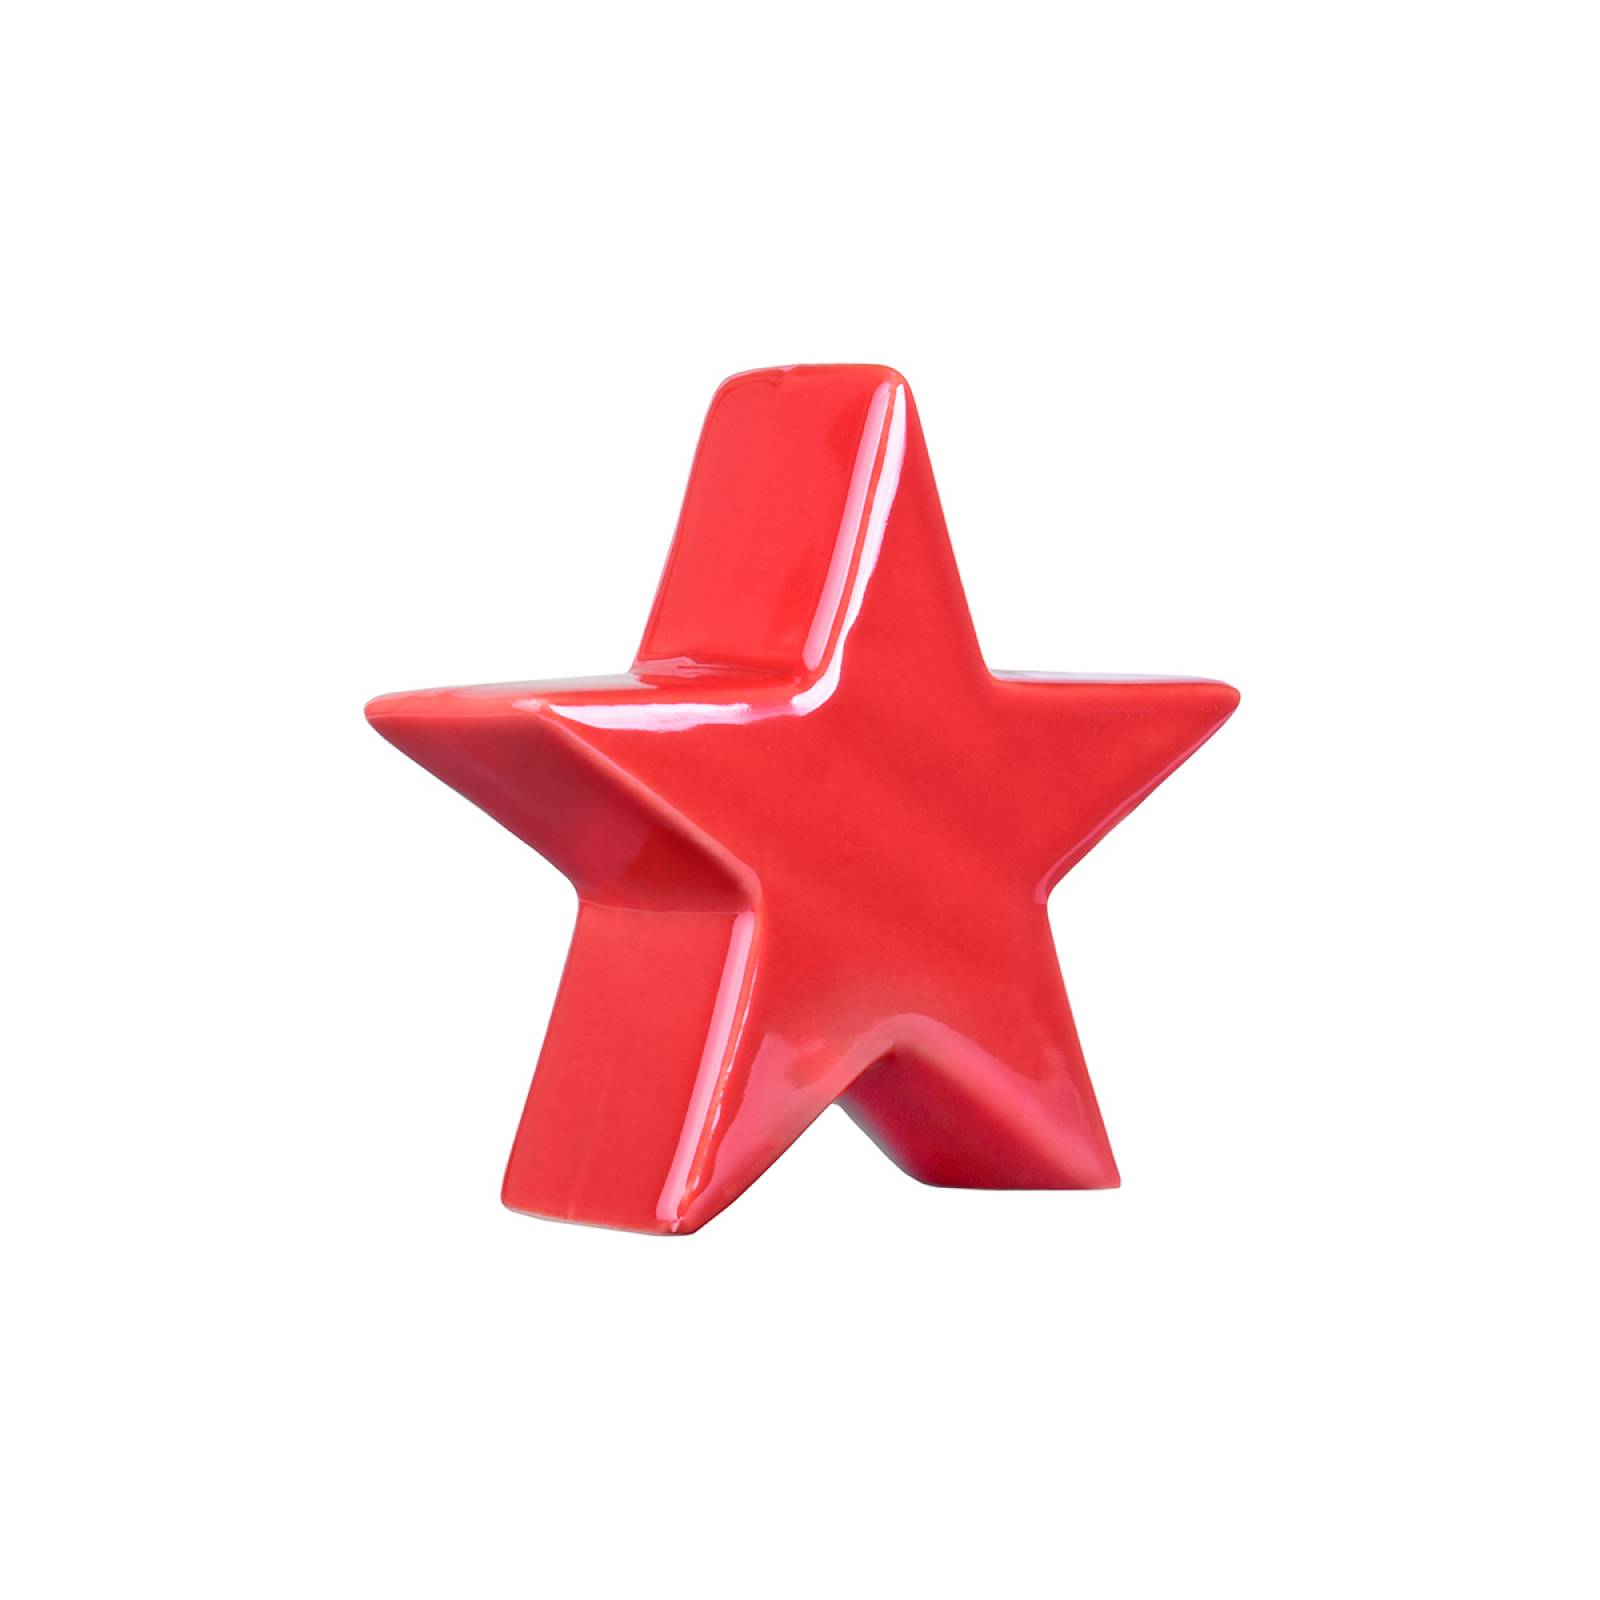 Figura Decorativa con Forma de Estrellas Navideñas Set de 3